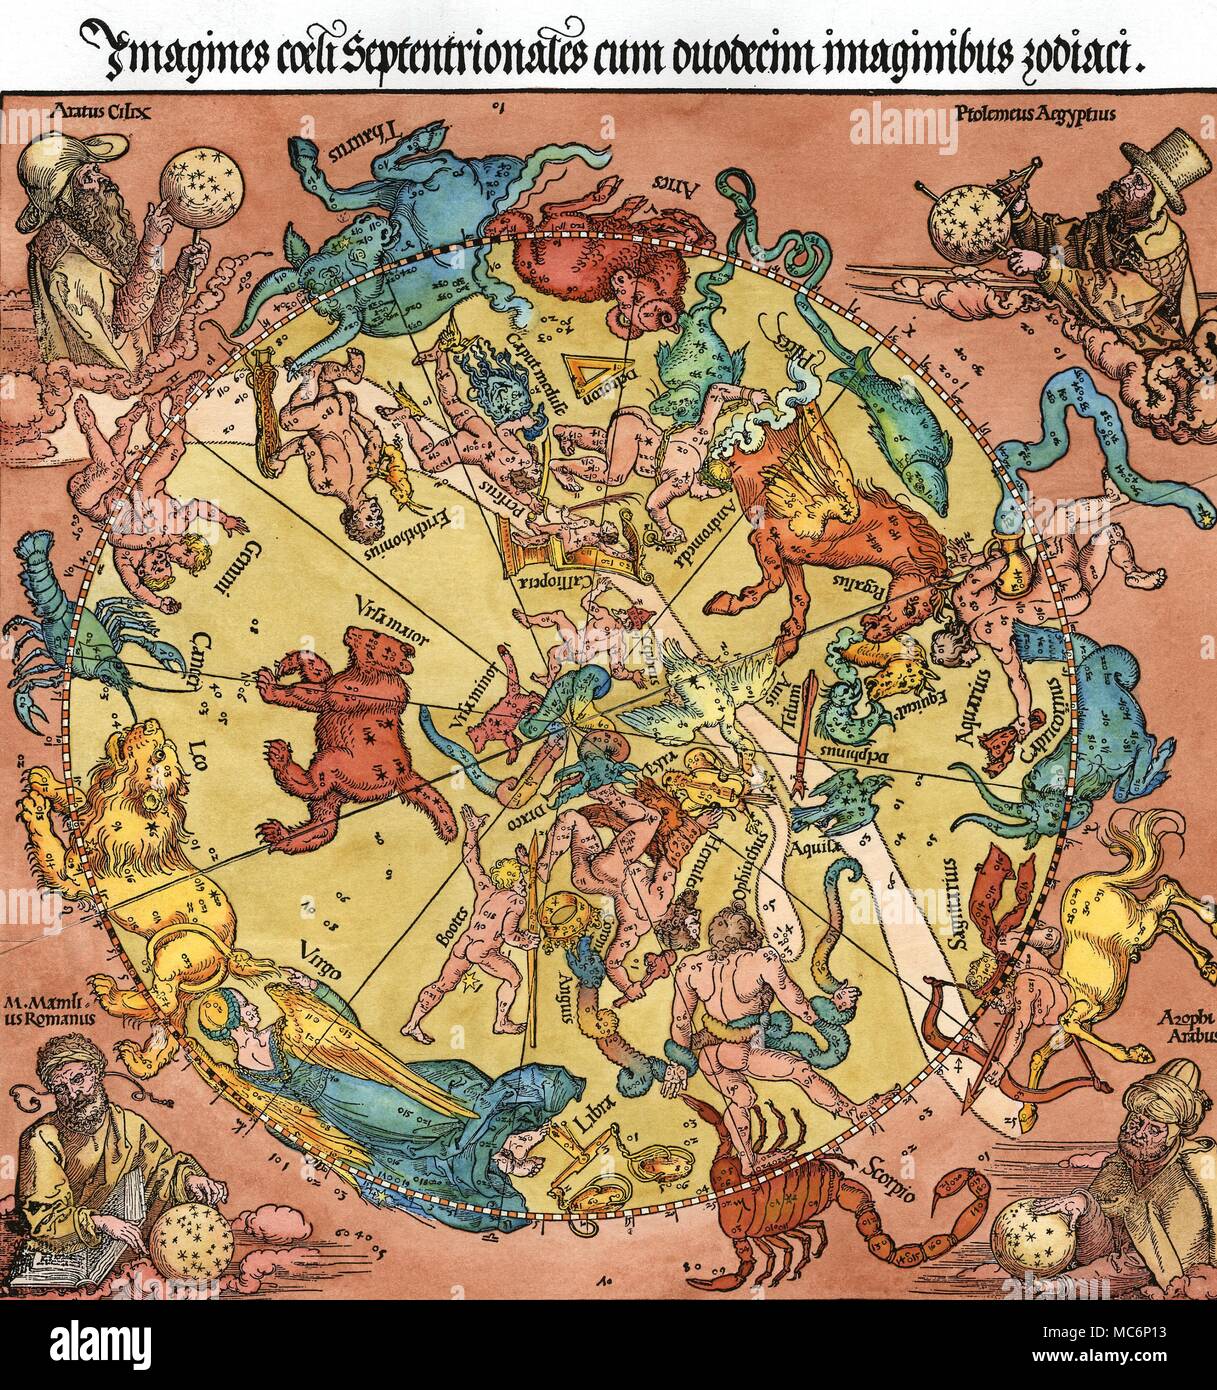 Sternbilder - Karte des nördlichen Himmel Holzschnitt Drucken von dem deutschen Künstler, Albrecht Dürer 1515, auf Antrag der Imperial Astronom, Johann Stabius. Die vier Porträts, in den Ecken der Drucken, vertreten (im Uhrzeigersinn von links oben) Aratus (wer schrieb ein Gedicht auf dem zodiac), Ptolemäus (wer war, wie die Inschrift behauptet, in Ägypten geboren, und wer schrieb die Tetrabiblos, über Astrologie), Al-Sufi (damals als Azophi, einem Arabischen (Arabus) Astrologe, der in Bagdad im 10. Jahrhundert aktiv waren bekannt, und Manilius (hier M Mamlius Romanus - Die römischen Astronom, der das Gedicht schrieb Stockfoto